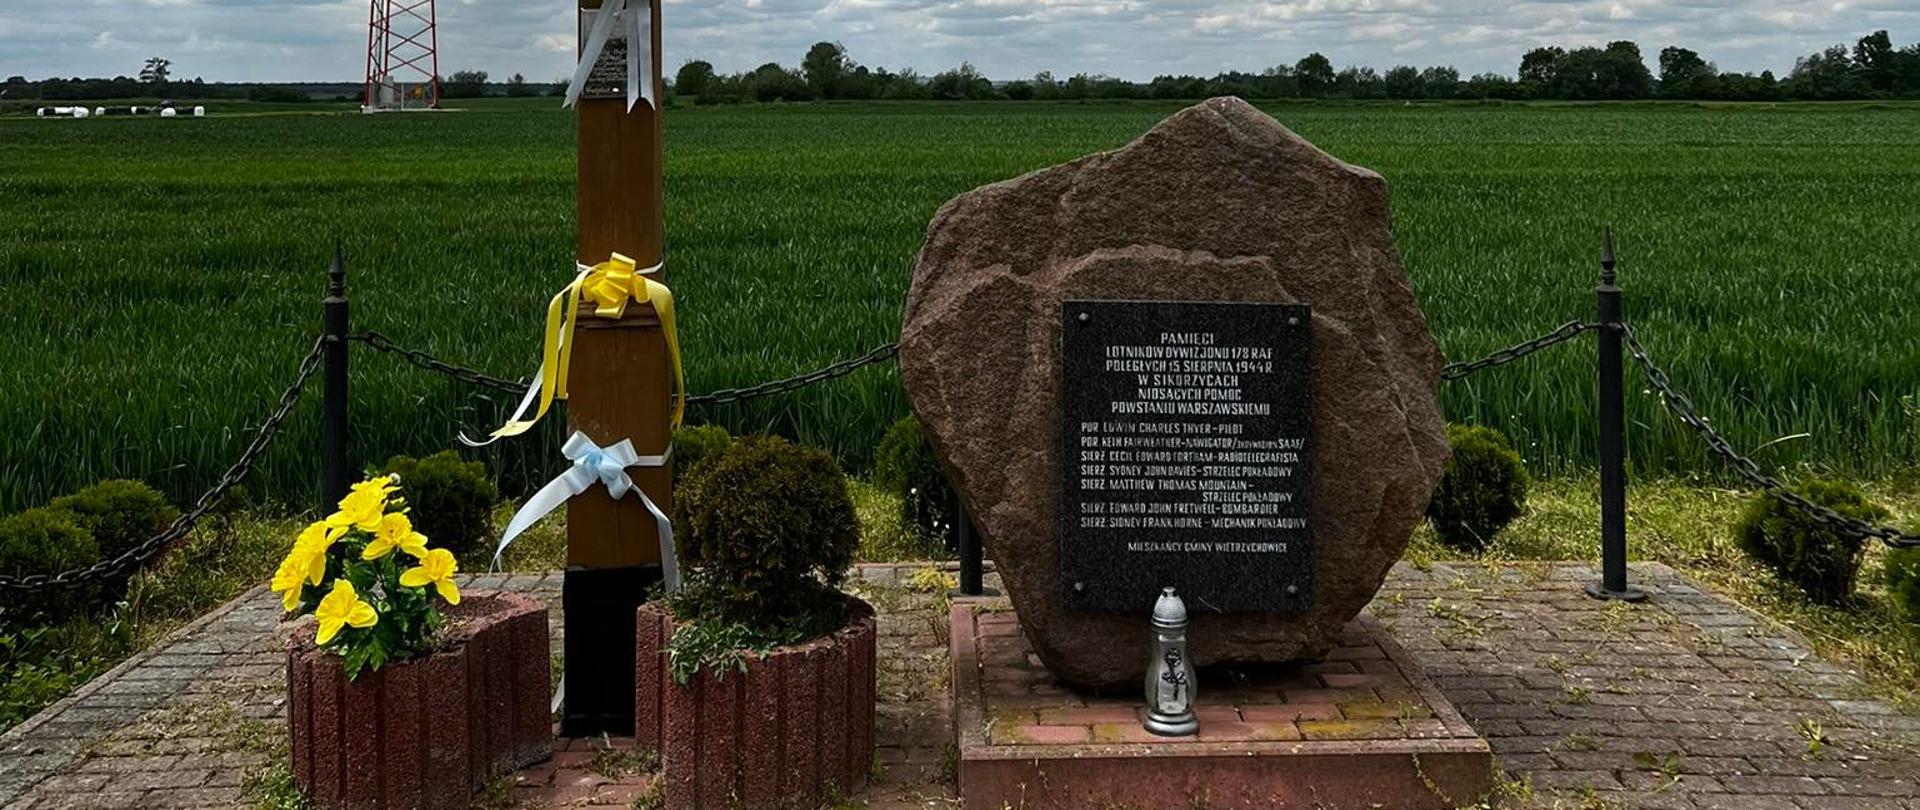 zdjęcie przedstawia krzyż oraz kamień z pamiątkową tablicą ku pamięci żołnierzy RAF 